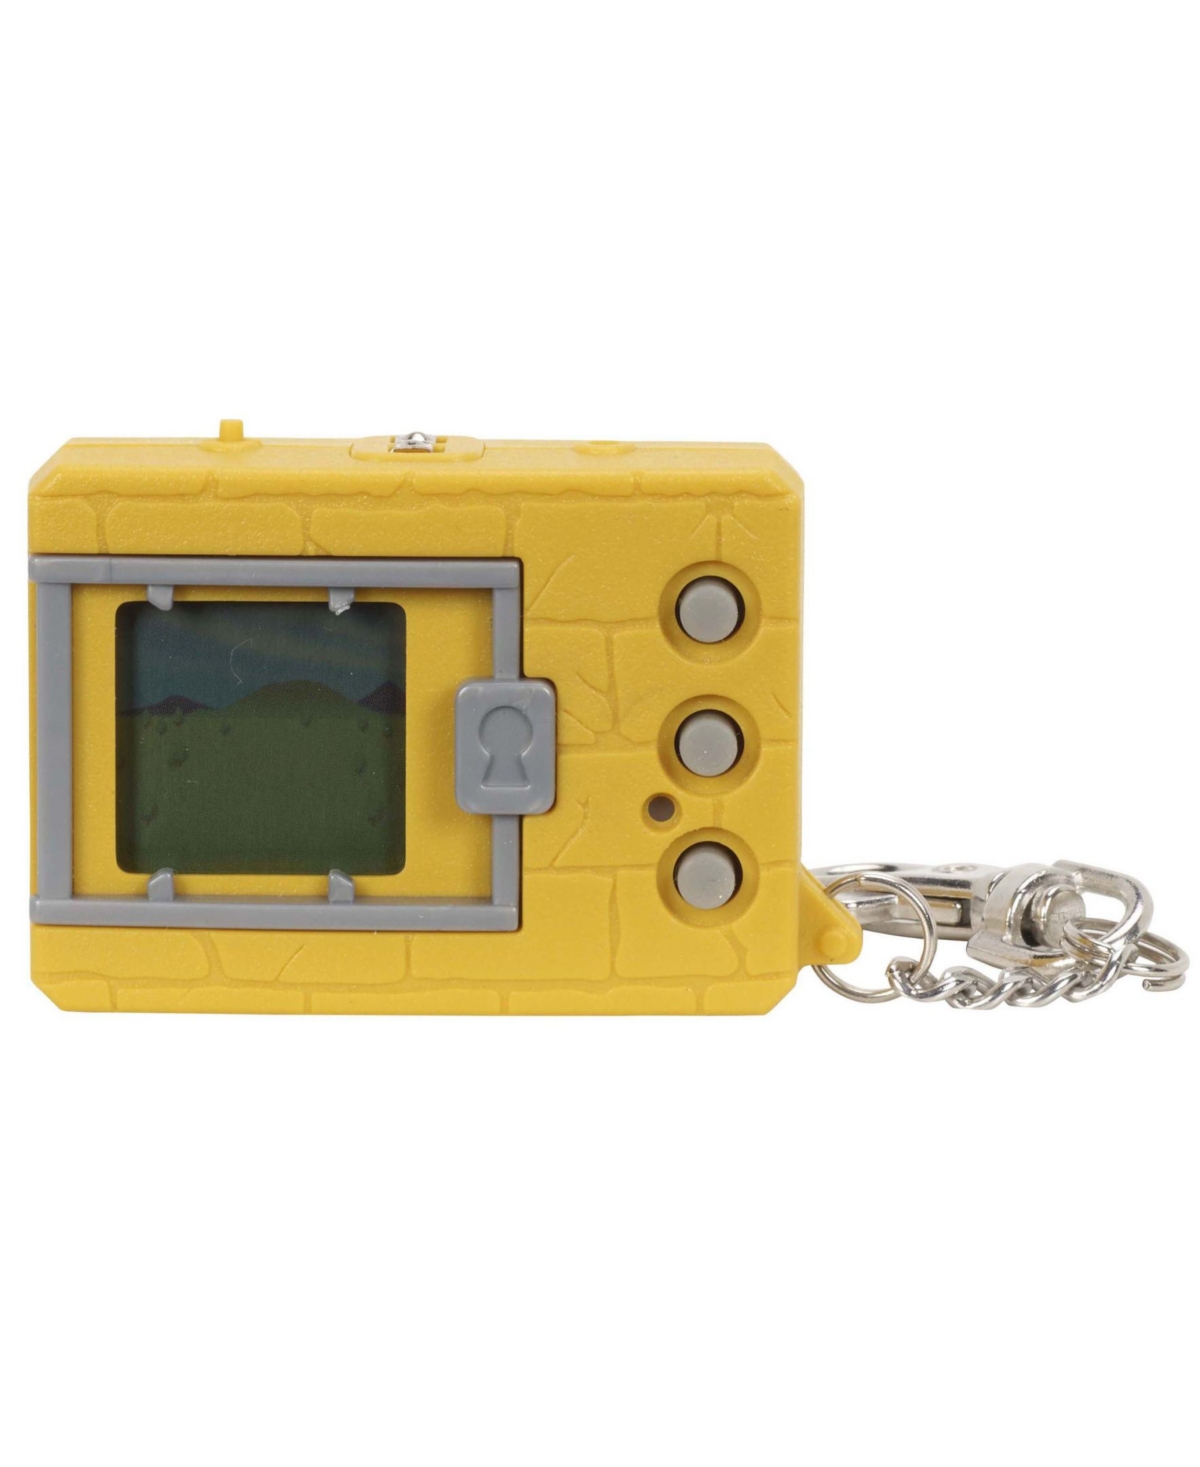 Digimon Bandai Original Digivice Virtual Pet Monster In Yellow